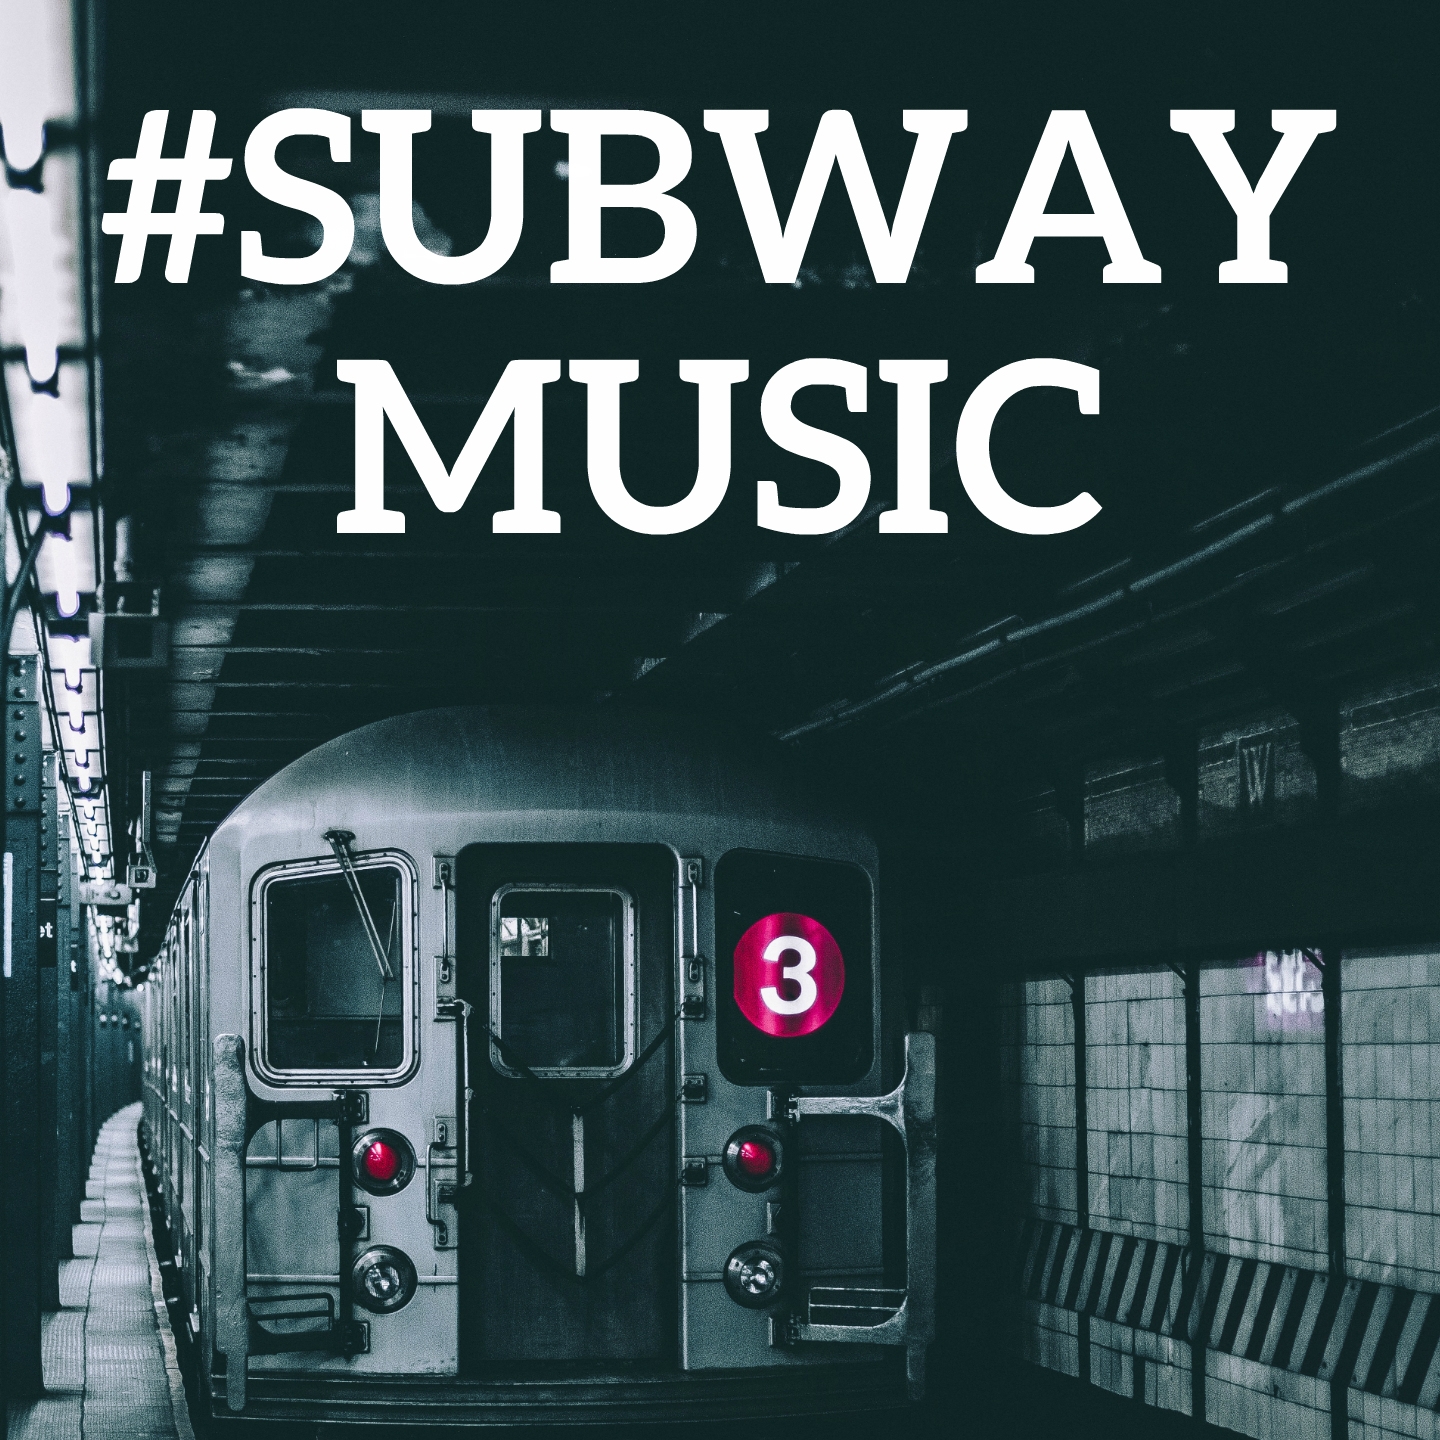 #Subway Music